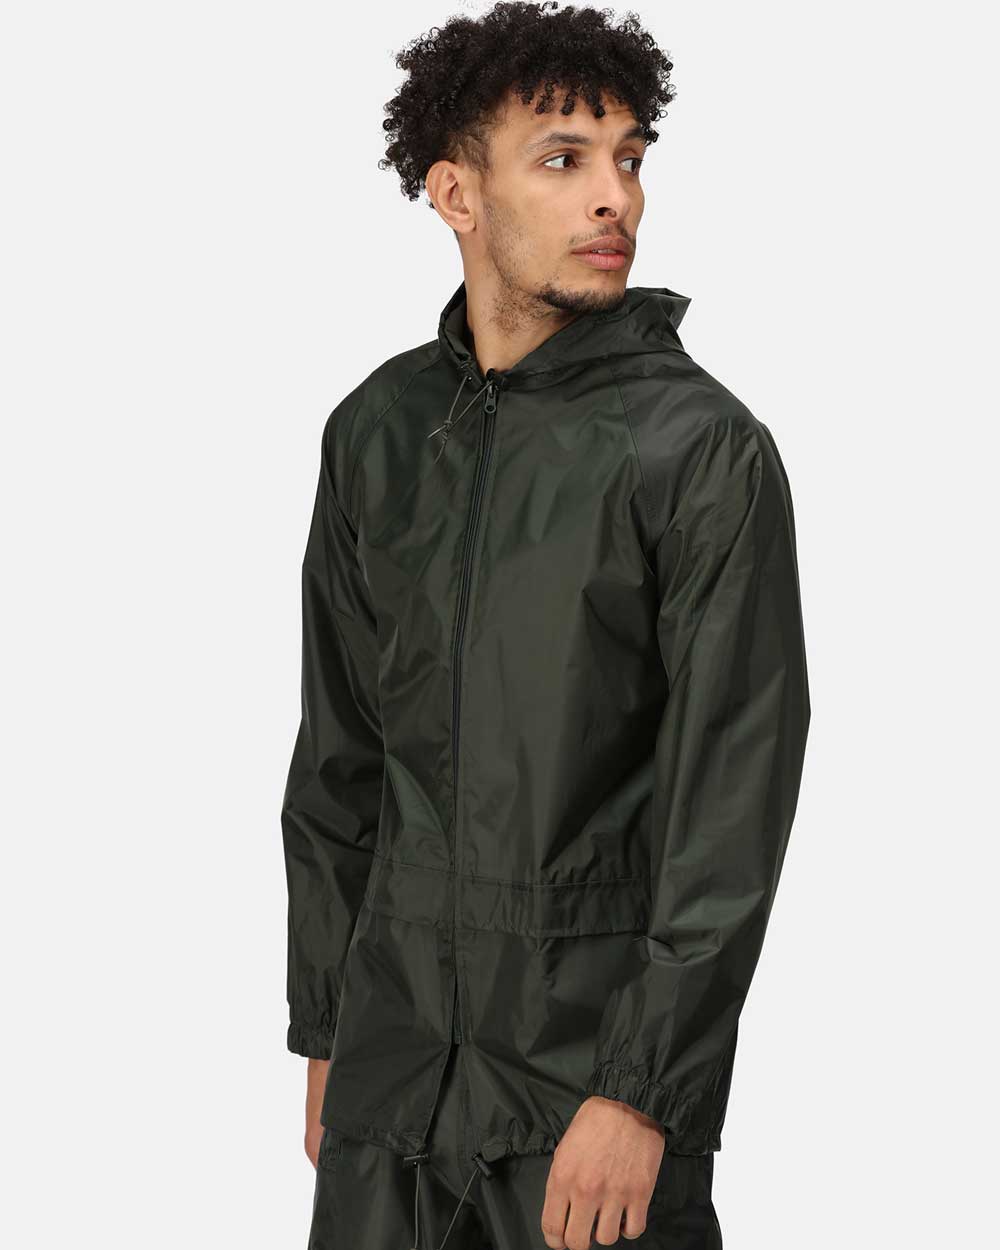 Regatta Pro Stormbreak Waterproof Jacket in Dark Olive 